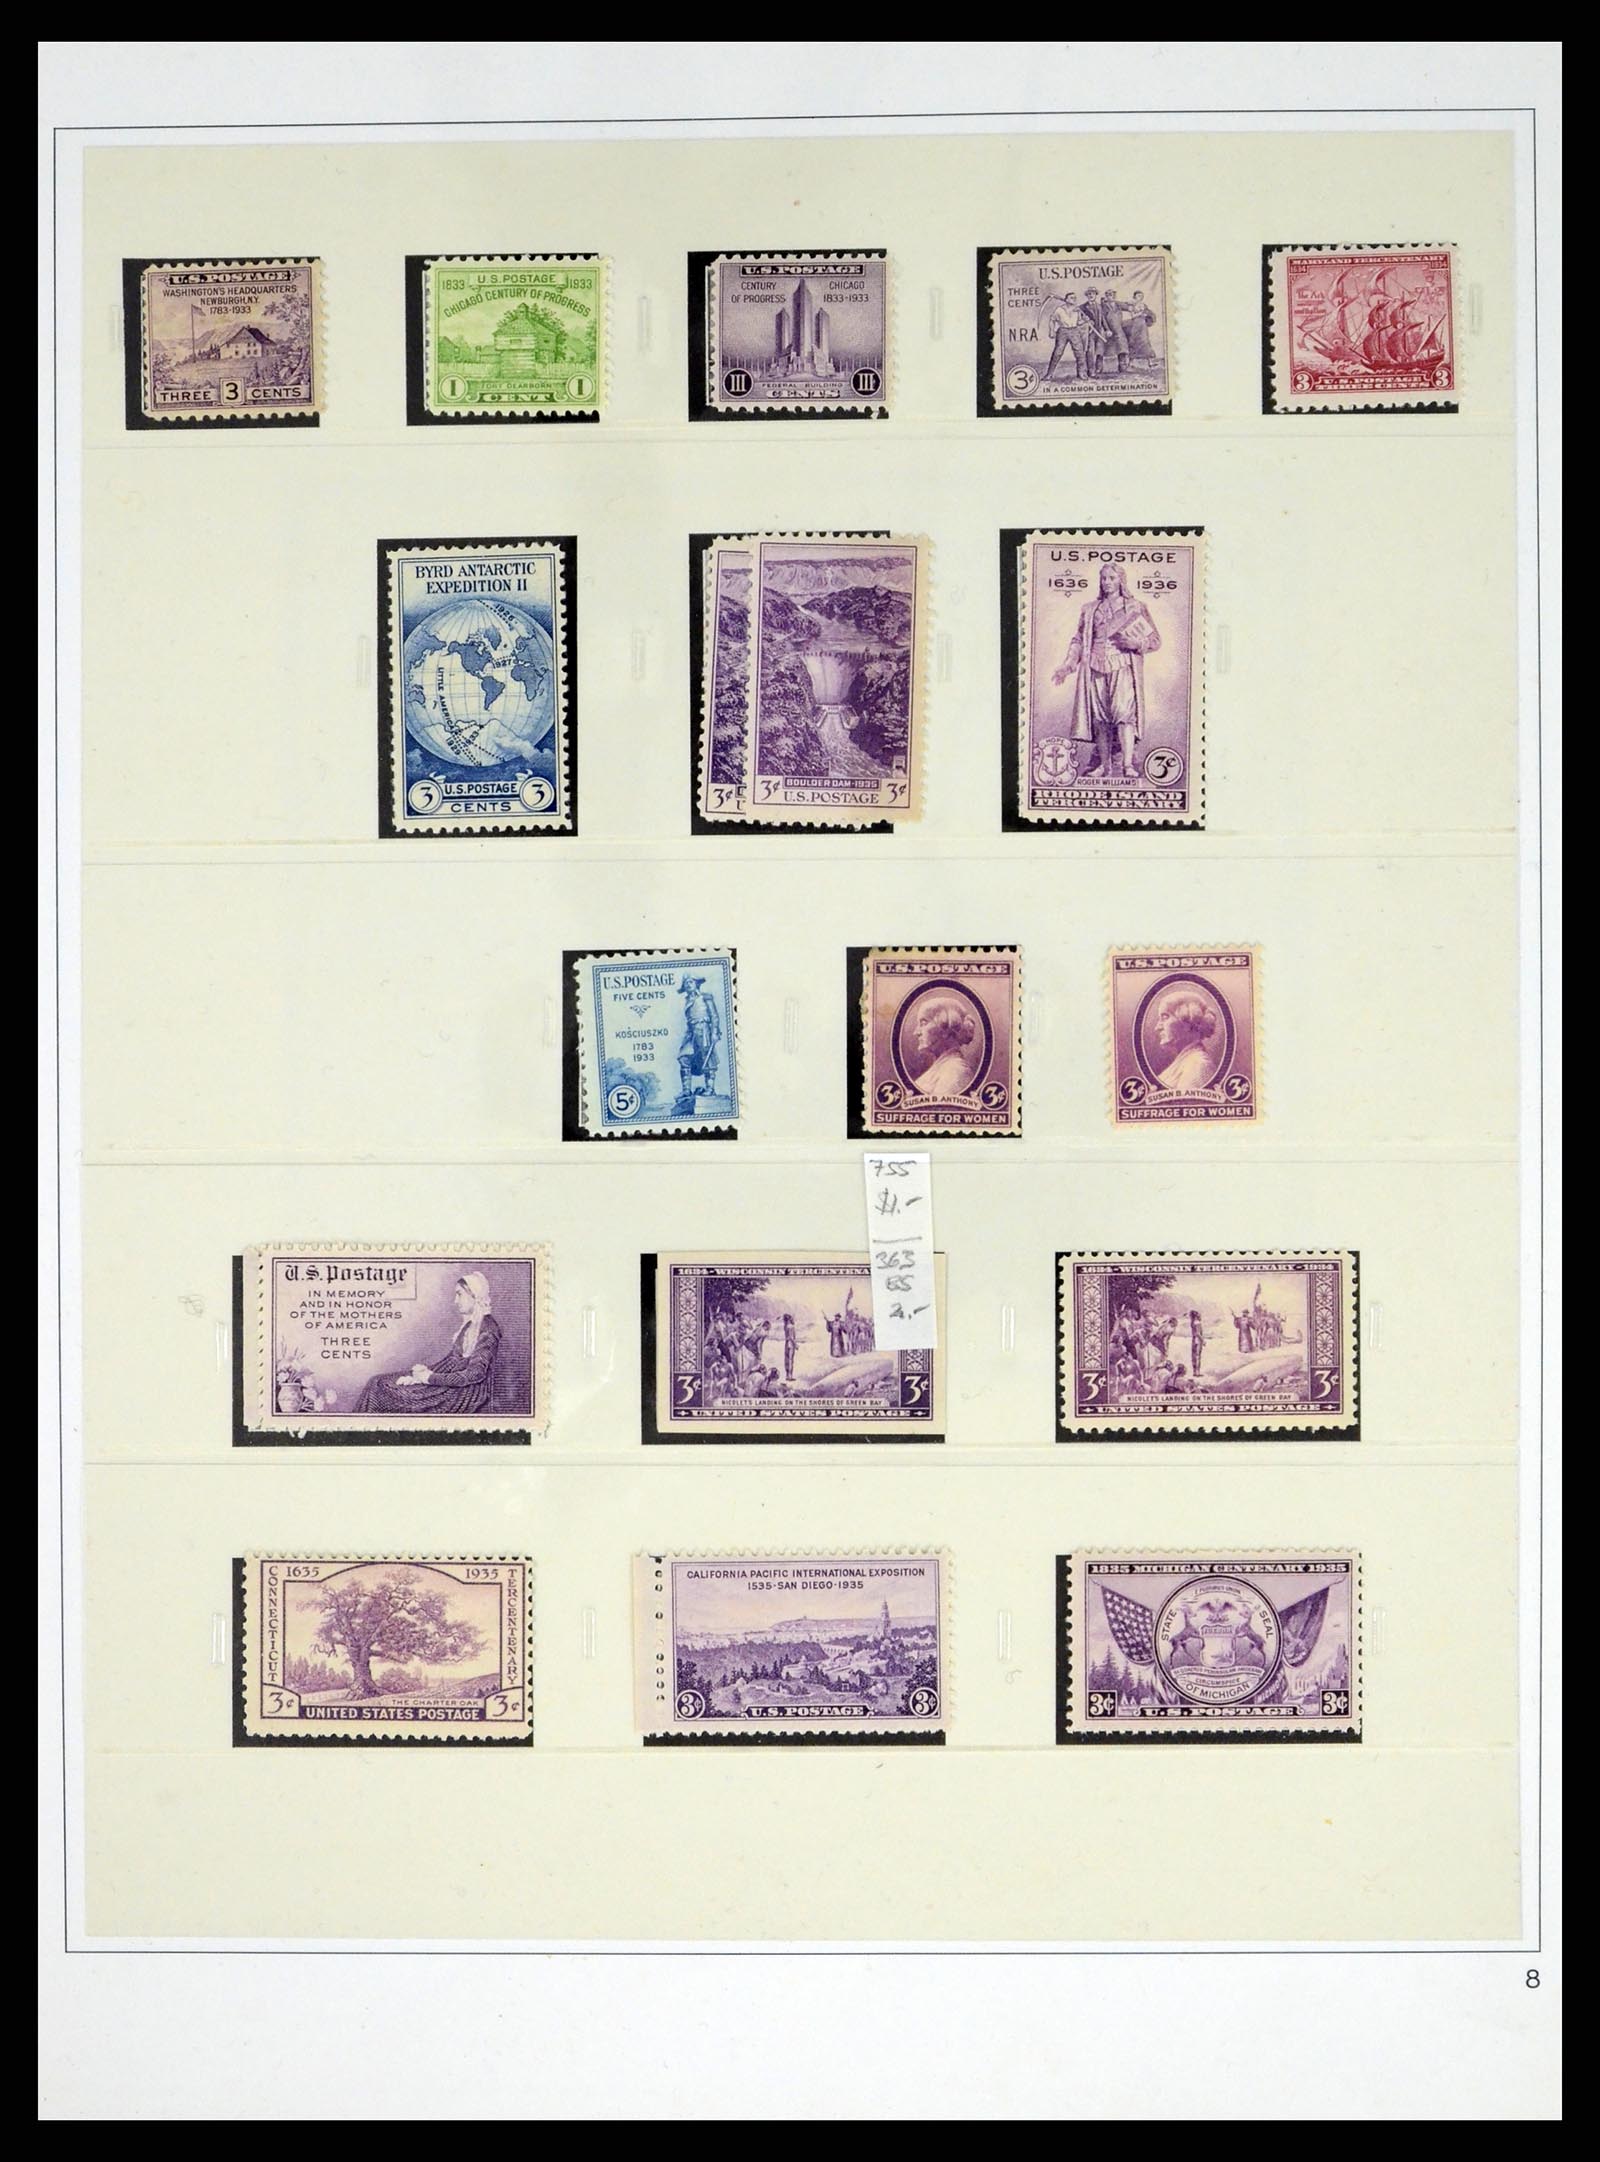 37551 038 - Stamp collection 37551 USA 1851-2001.